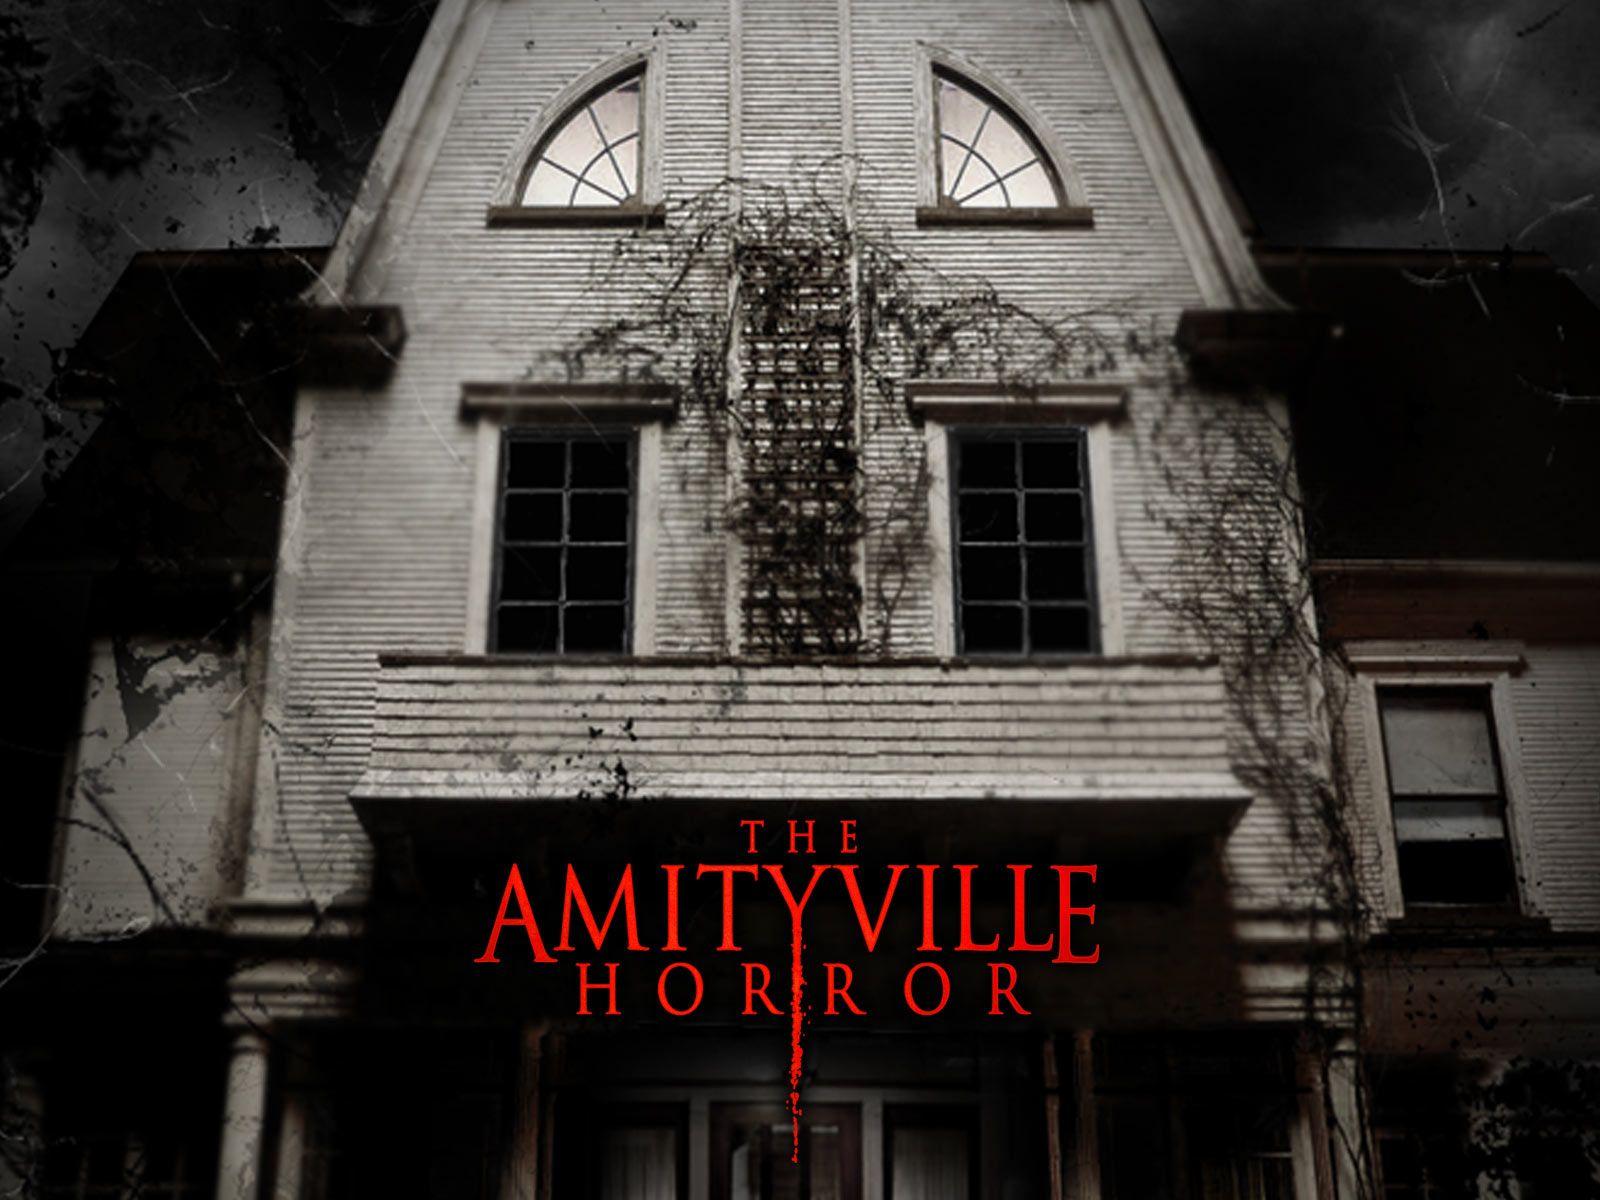 The Amityville Horror The Amityville Horror (id: 180997)